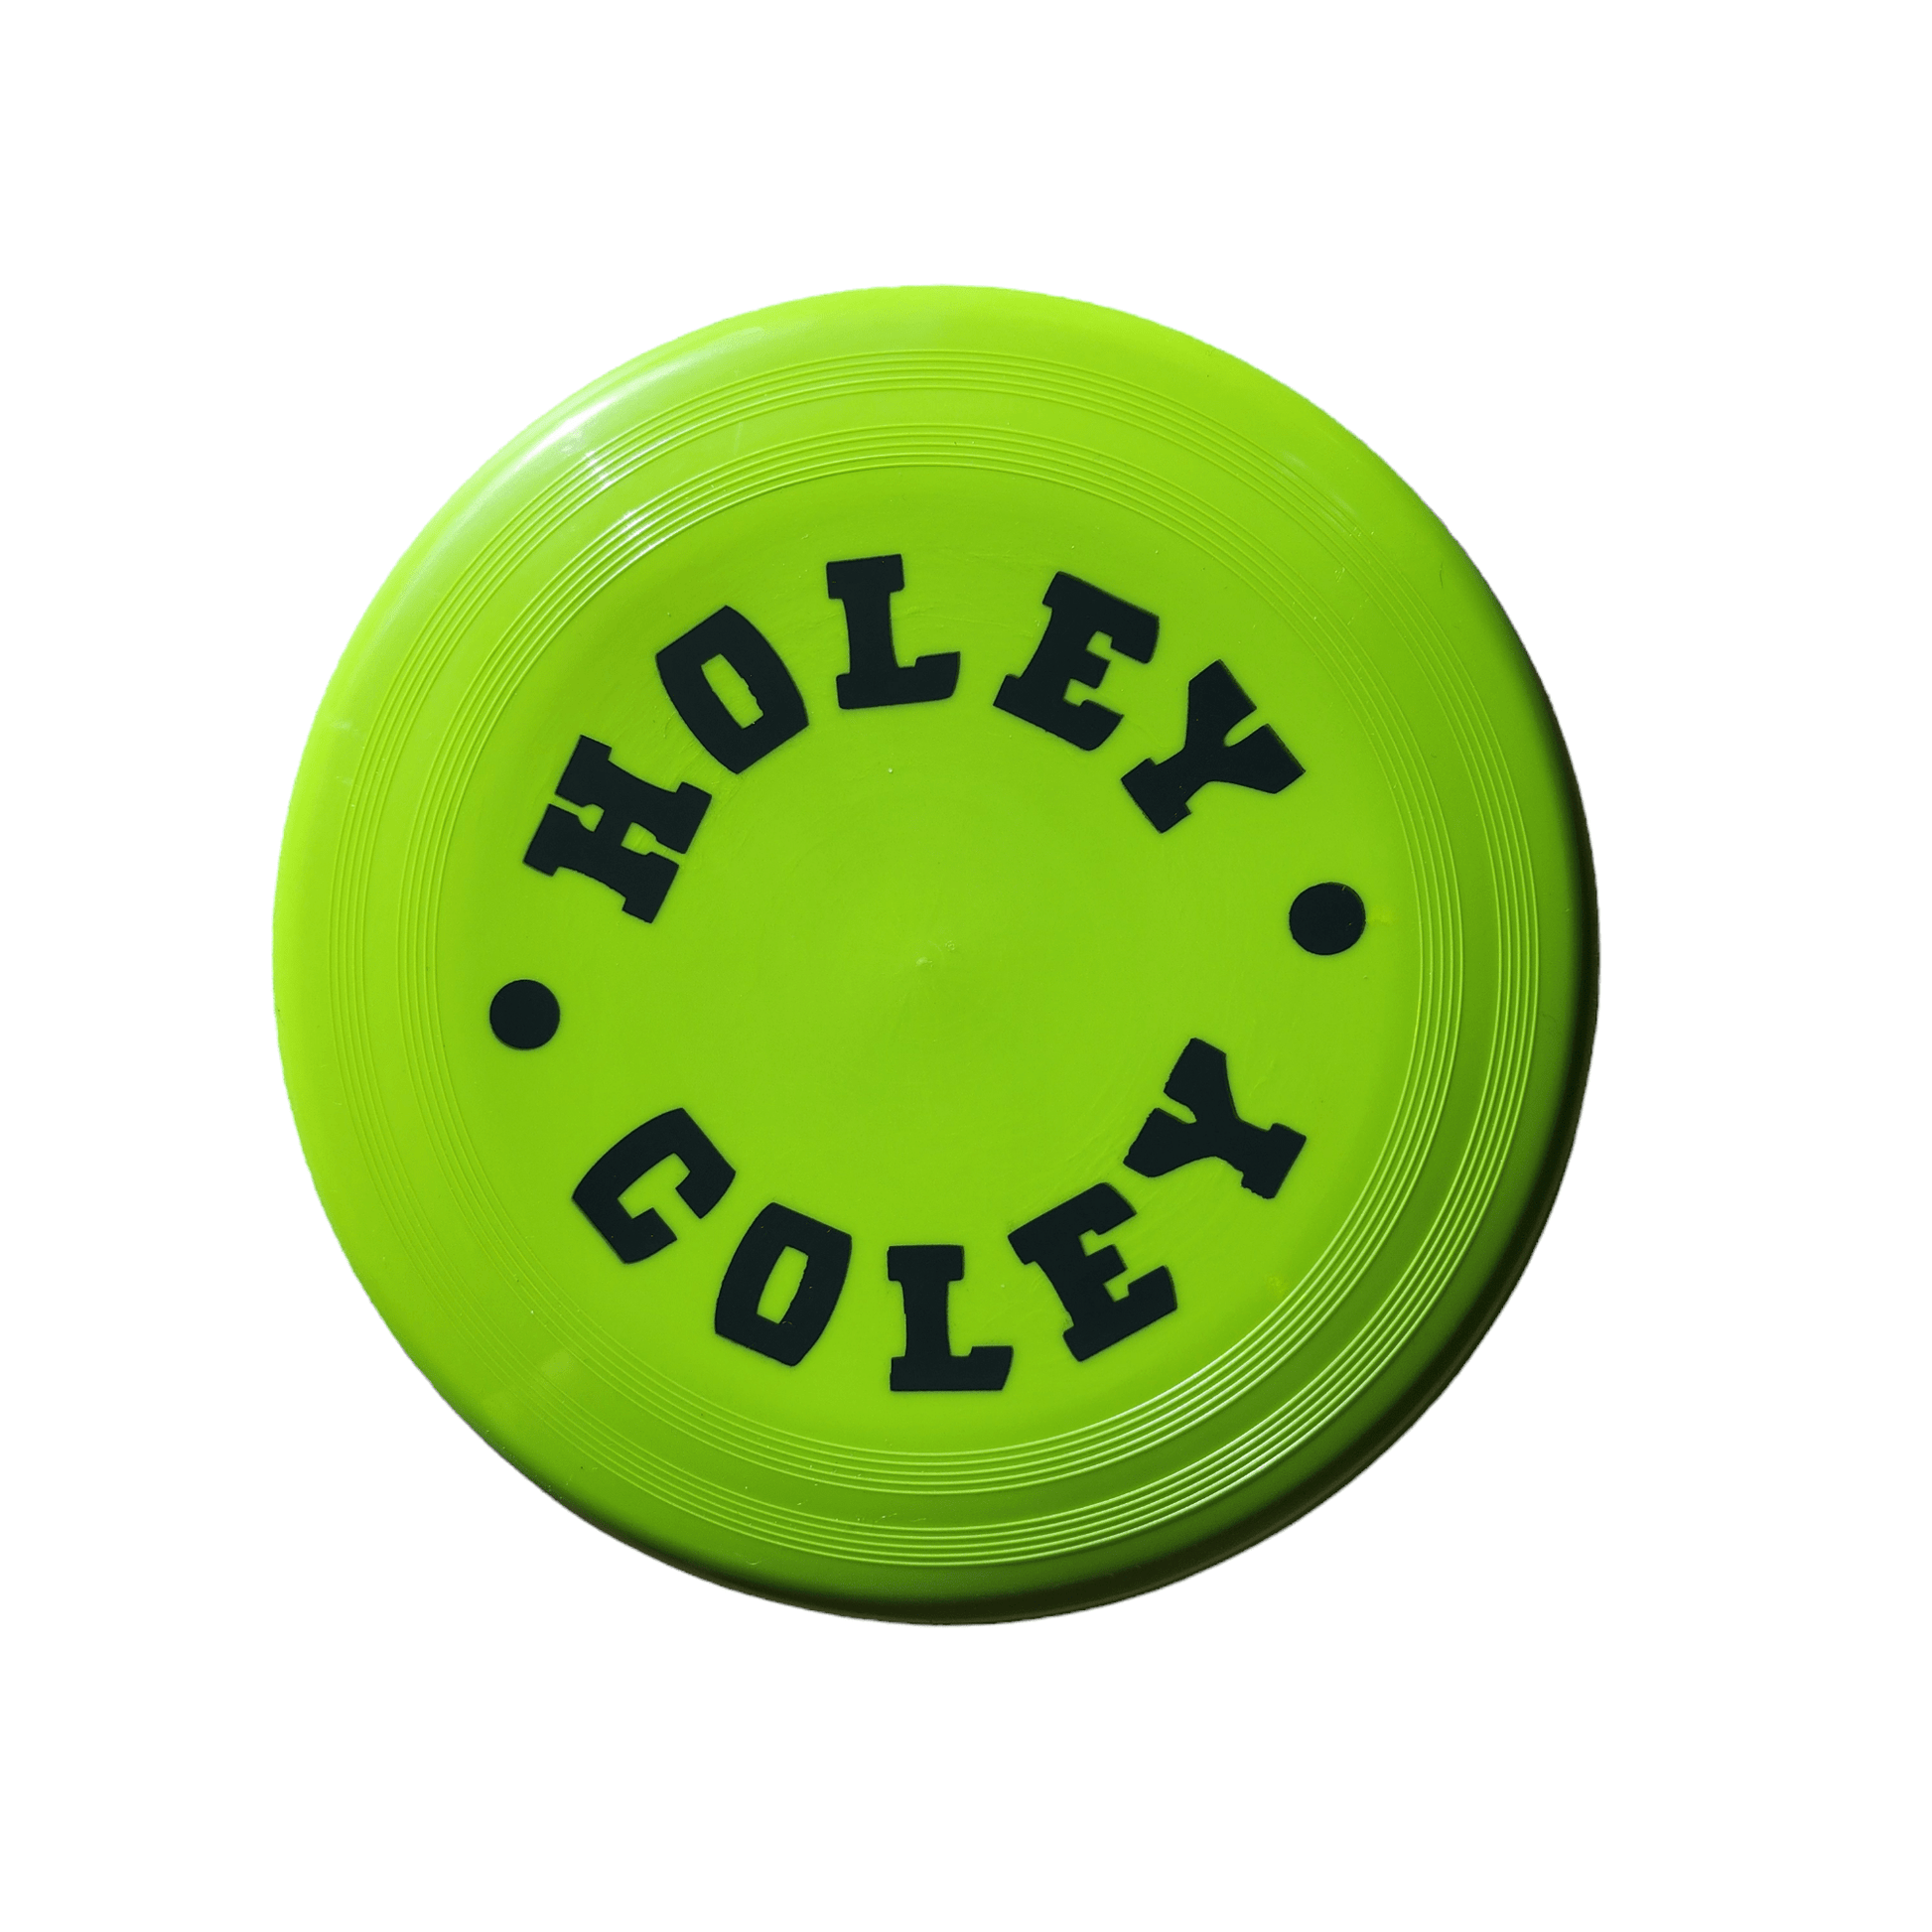 Frisbee - holeycoley.nz